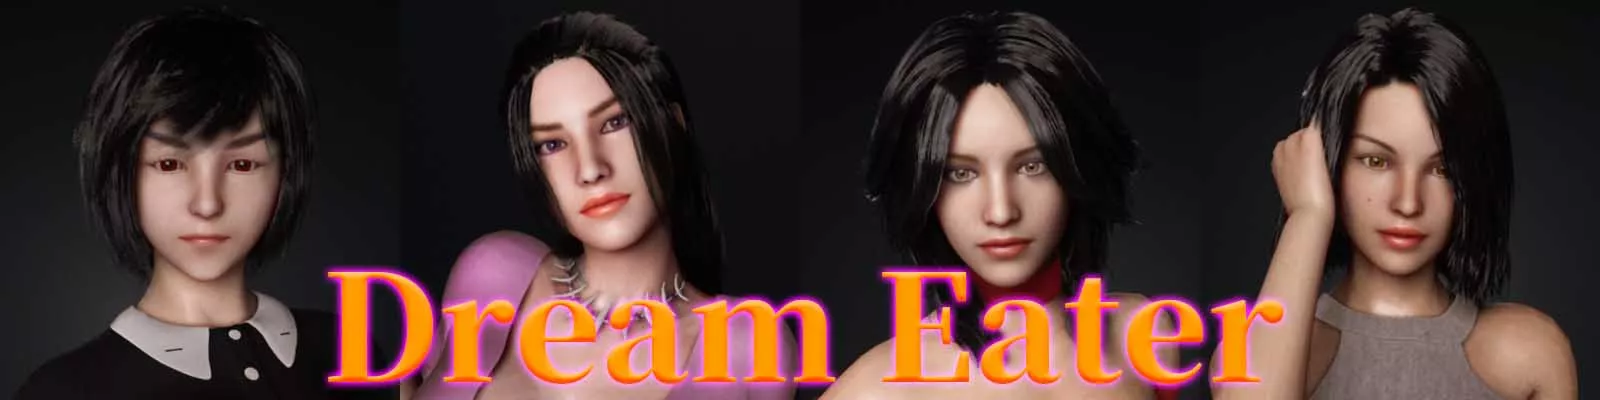 Dream Eater 3d gra erotyczna, gry dla dorosłych, gra porno, gra xxx